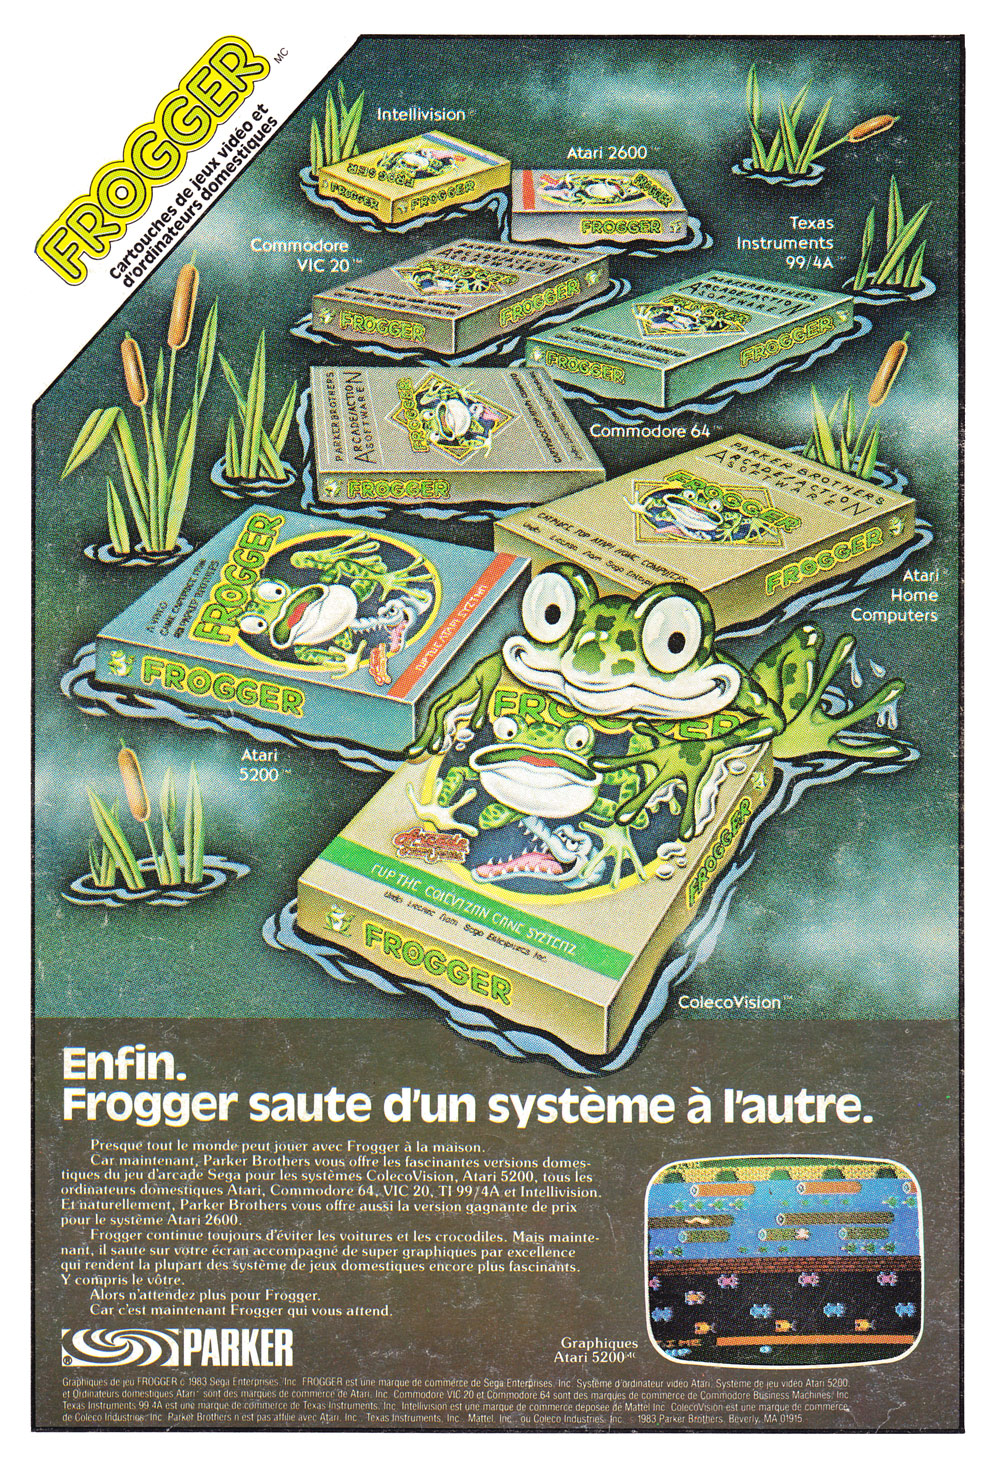 Frogger CA PrintAdvert.jpg